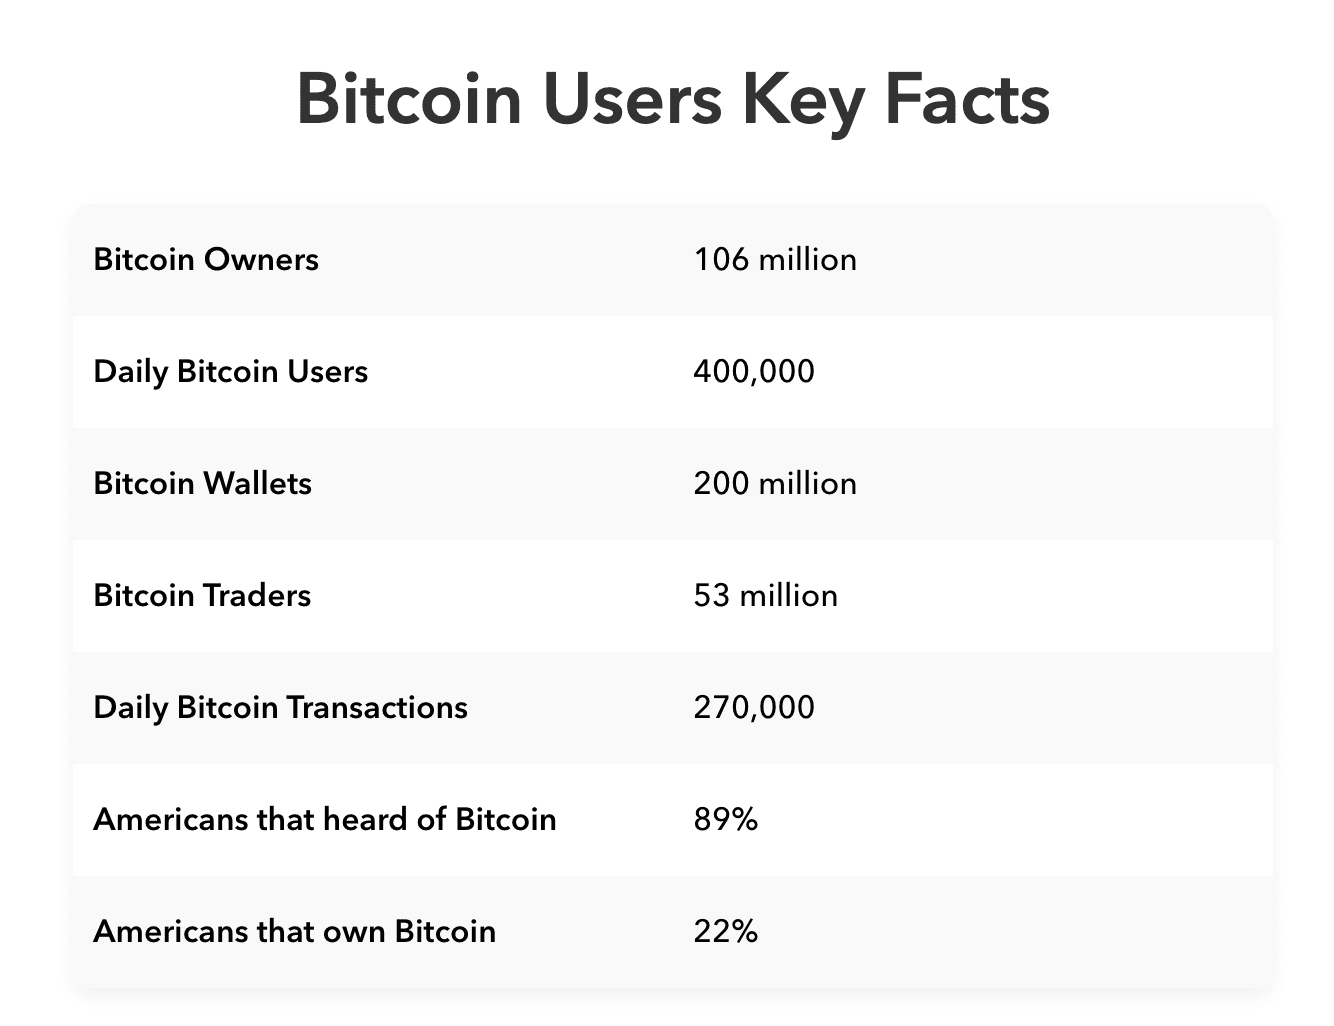 Bitcoin key facts